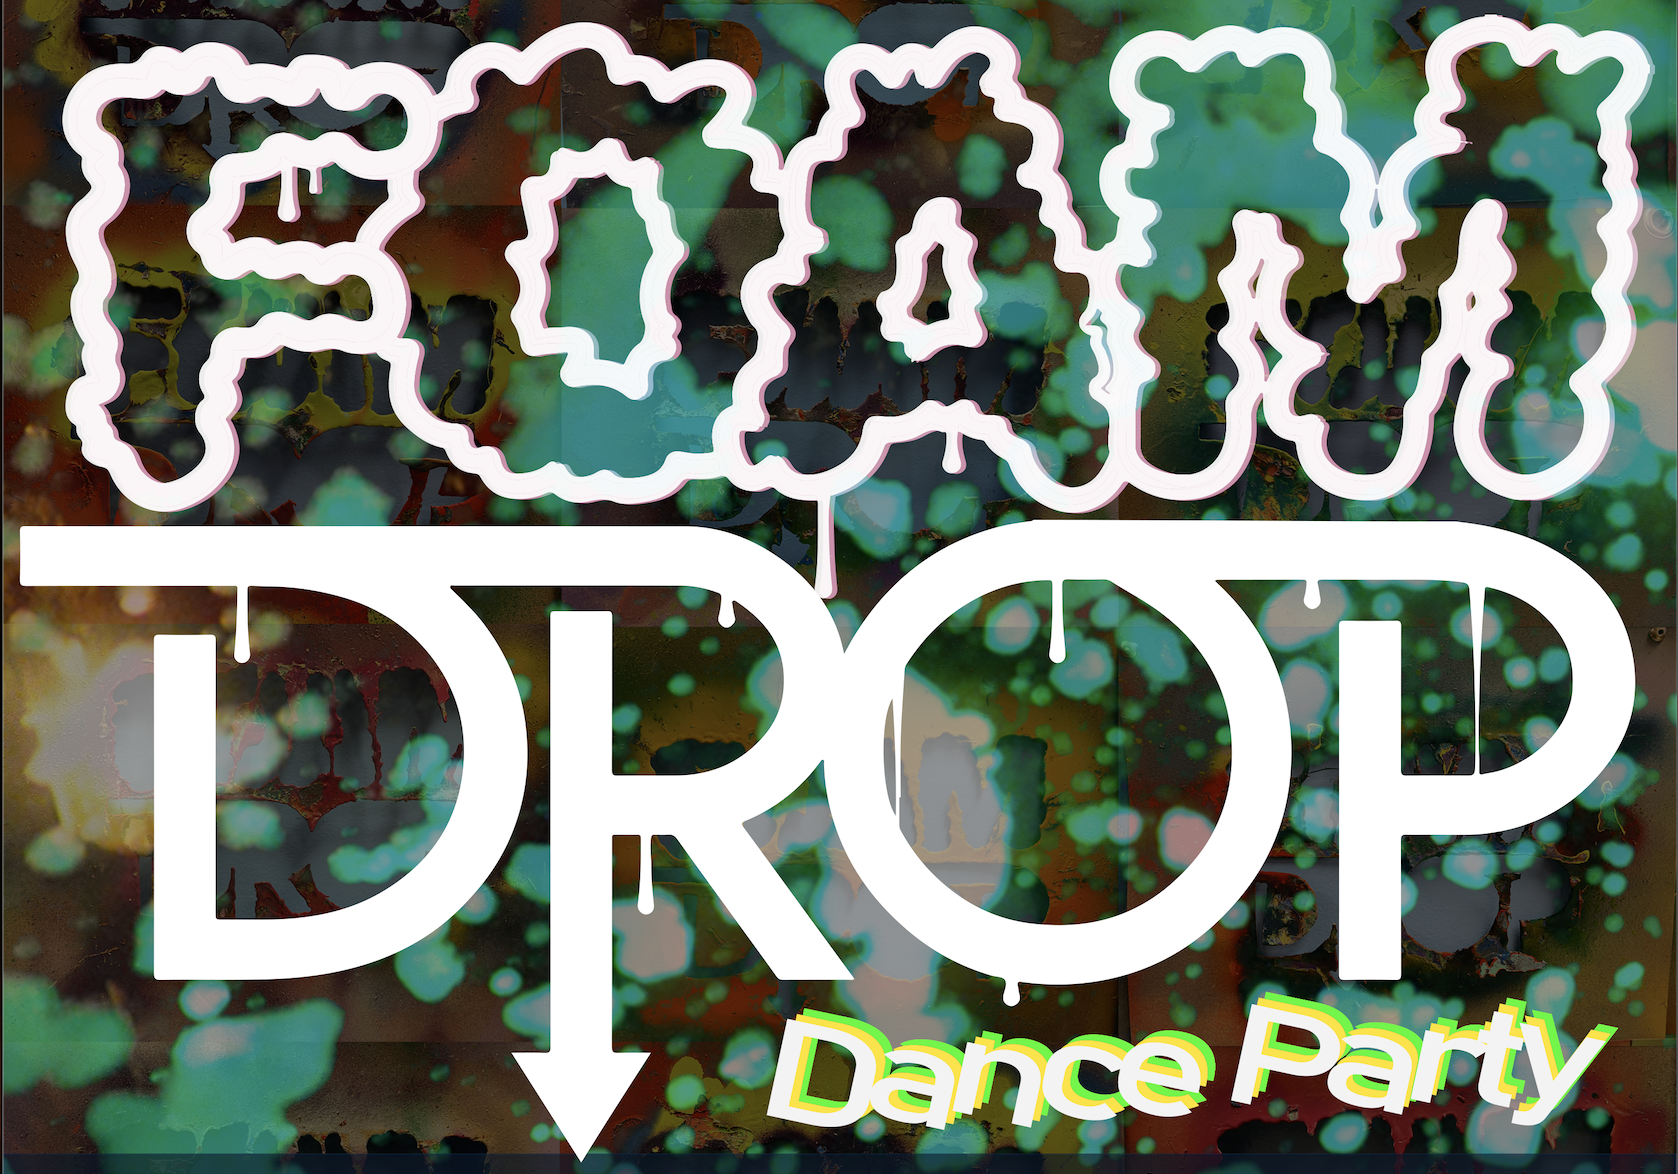 09.15 – Foam Drop/Paint Party (9.12 – Free Tank Tops)